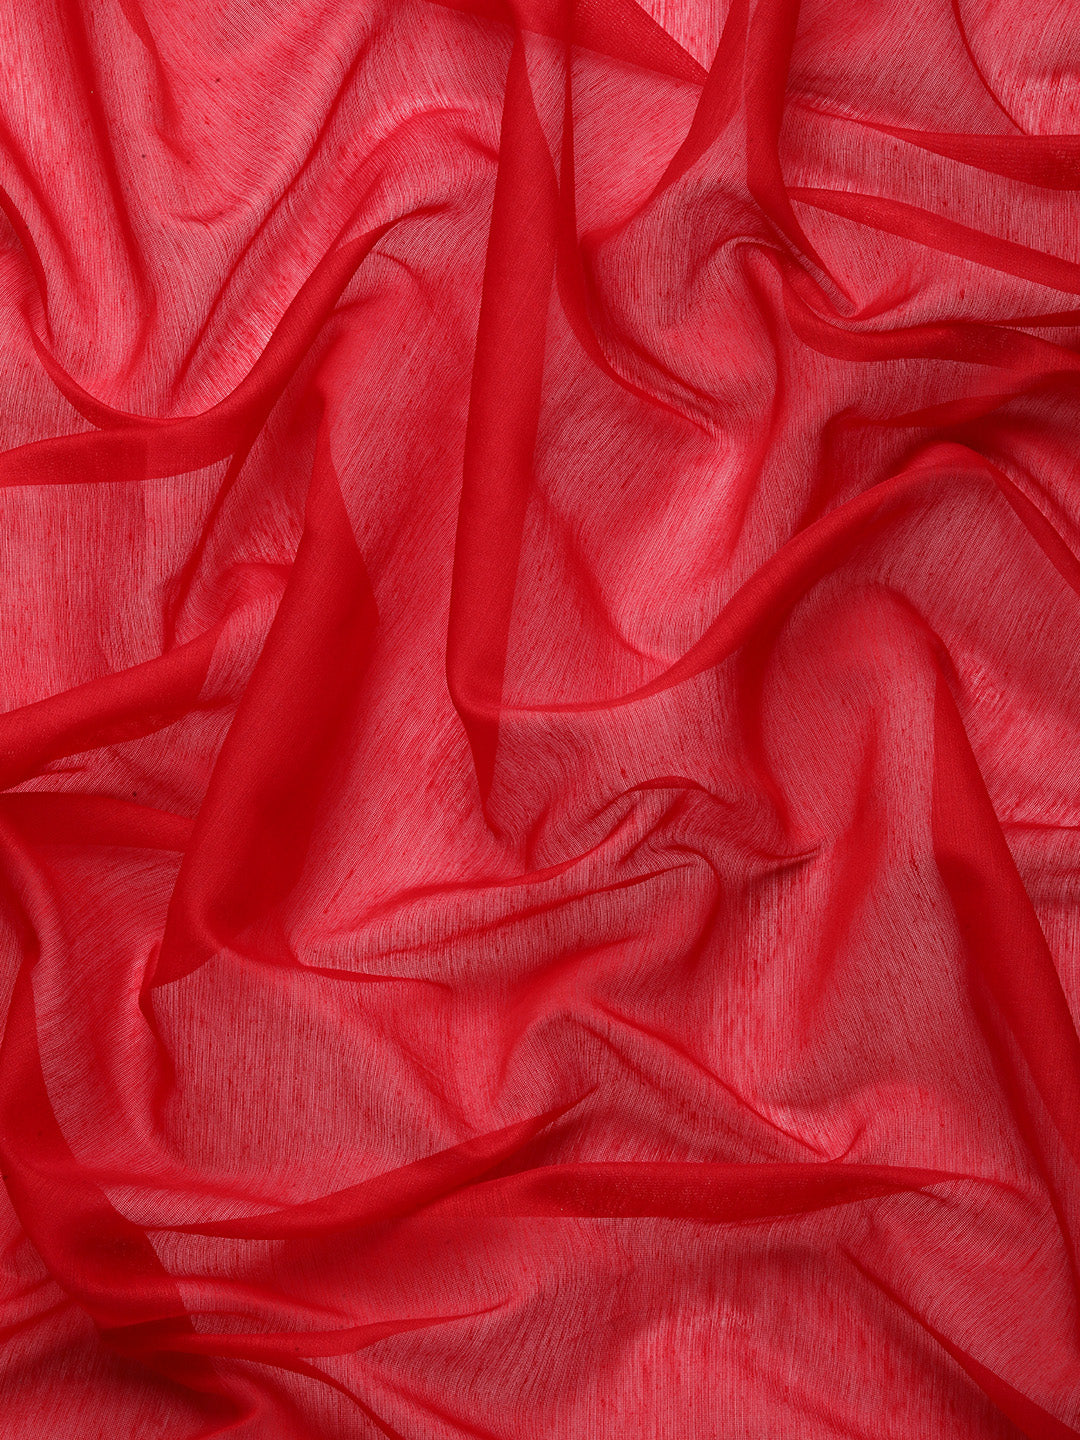 Designer Red Cotton Saree